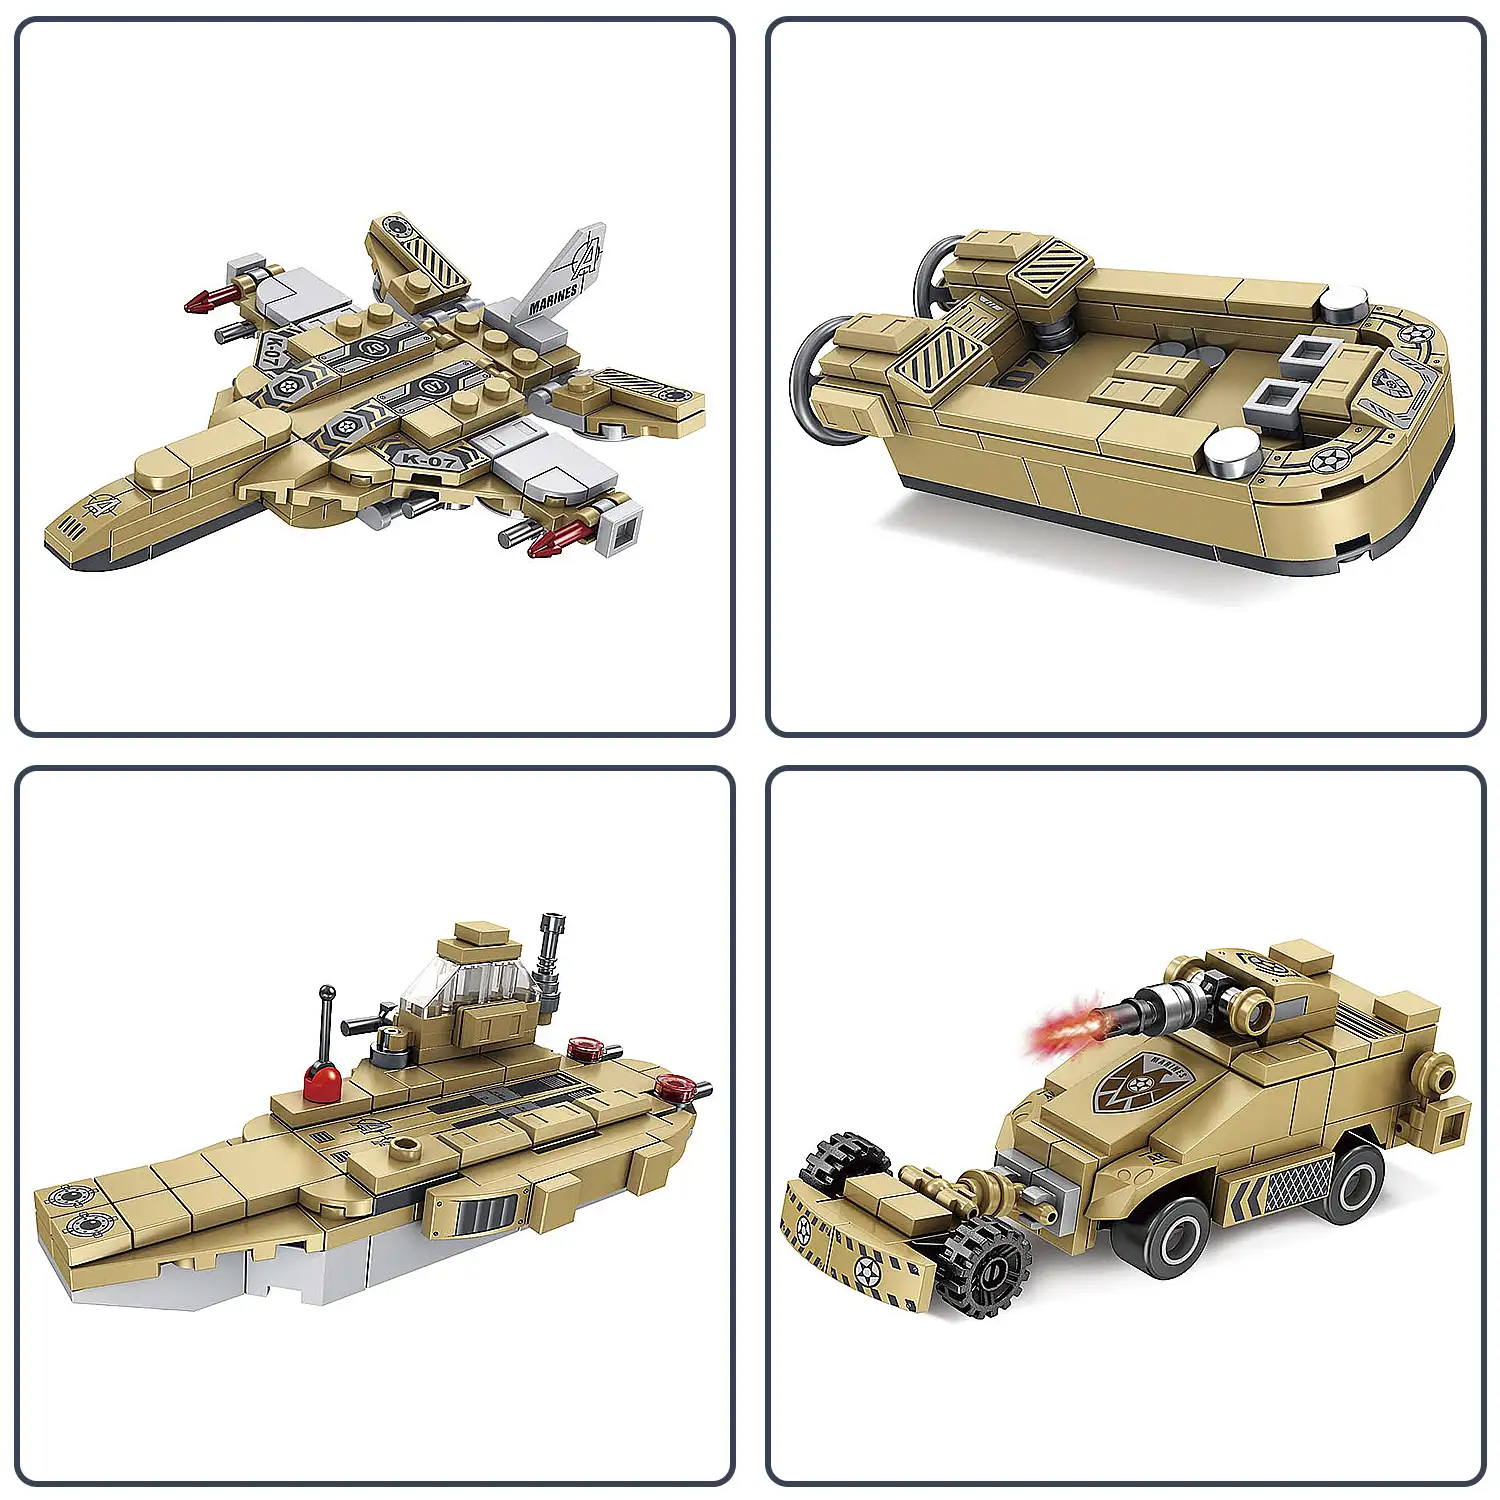 Vehículo de infantería tanque con ruedas 8 en 1, con 725 piezas. Construye 8 modelos individuales con 2 formas cada uno.